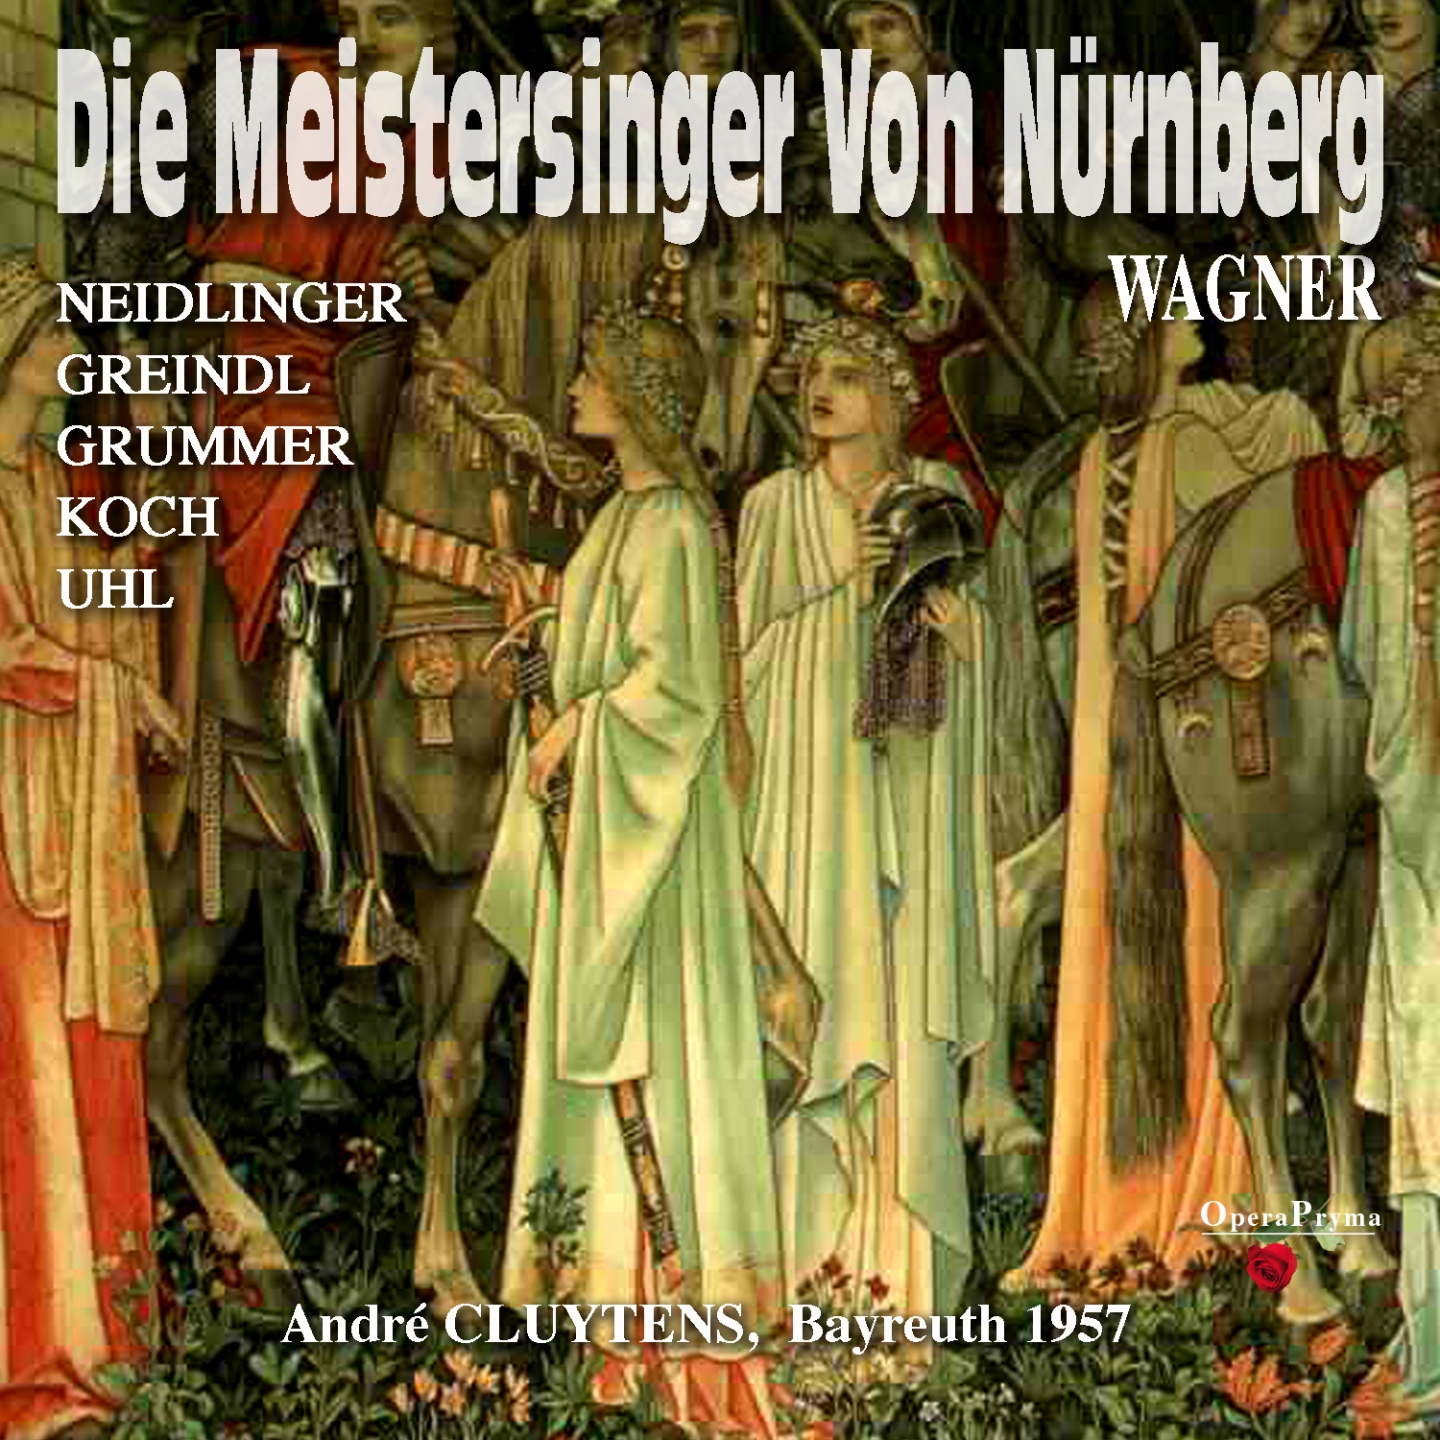 Die Meistersinger von Nü rnberg, Act I: " Am stillen Herd in Winterszeit" Walther von Stolzing, Sachs